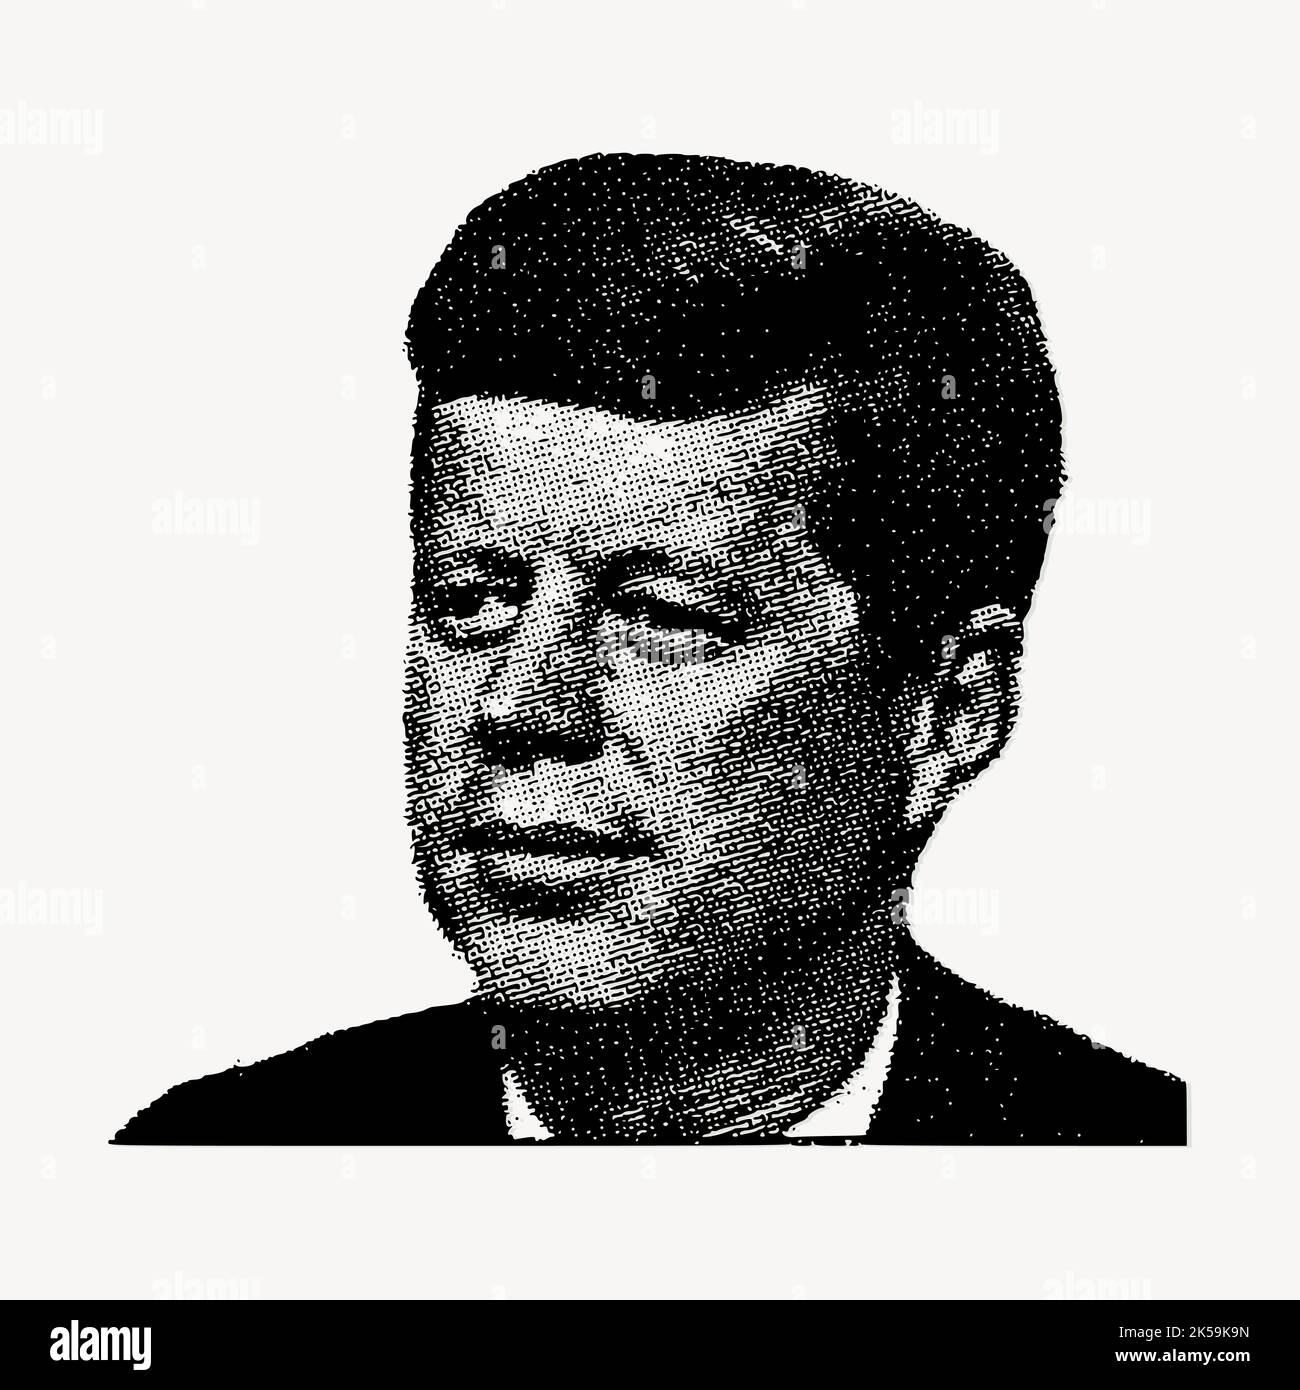 John F. Kennedy portrait clipart, vecteur d'illustration du président américain. Illustration de Vecteur